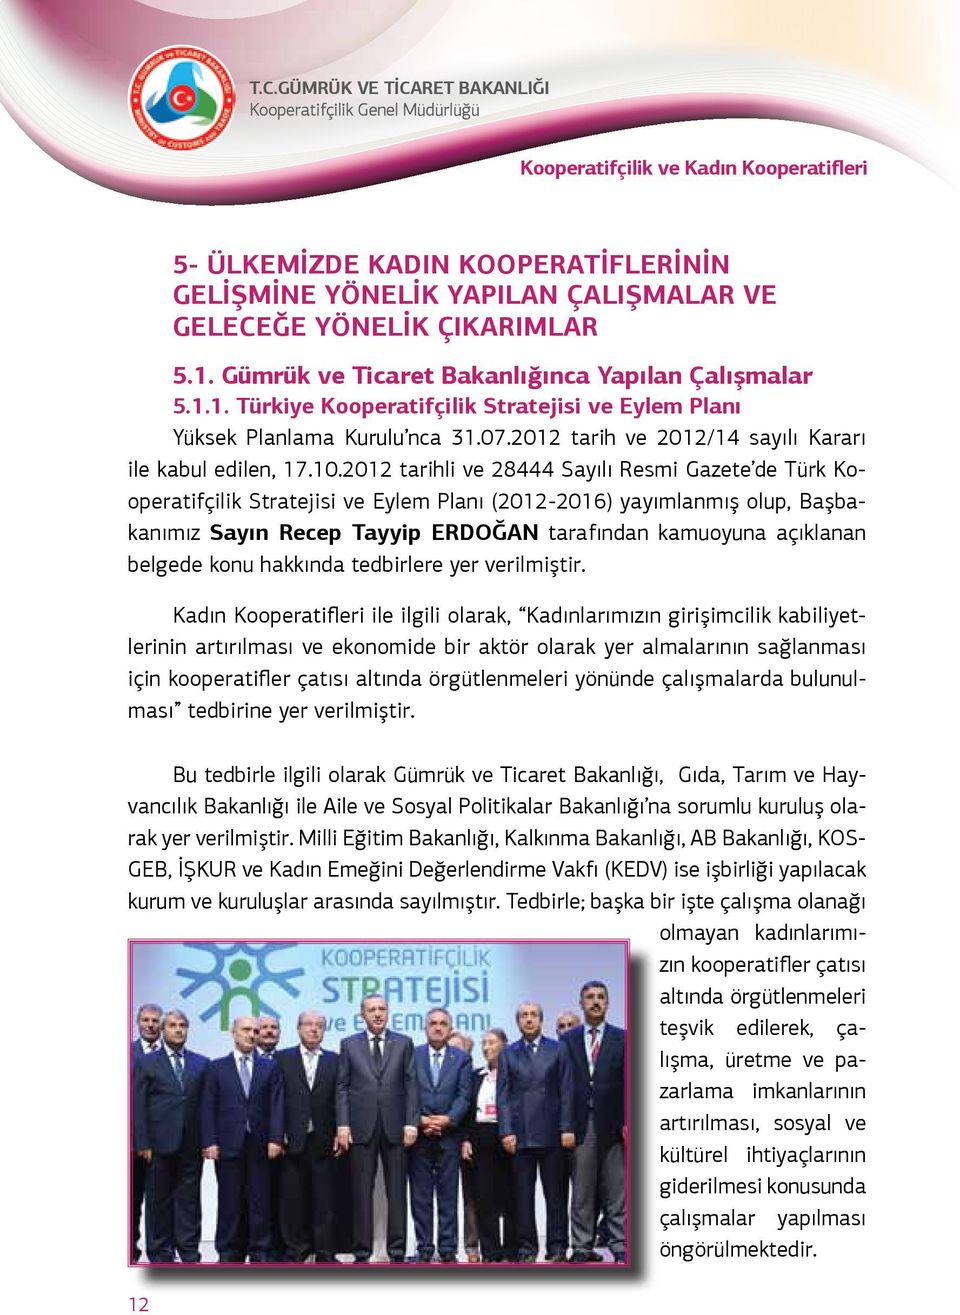 2012 tarihli ve 28444 Sayılı Resmi Gazete de Türk Kooperatifçilik Stratejisi ve Eylem Planı (2012-2016) yayımlanmış olup, Başbakanımız Sayın Recep Tayyip ERDOĞAN tarafından kamuoyuna açıklanan